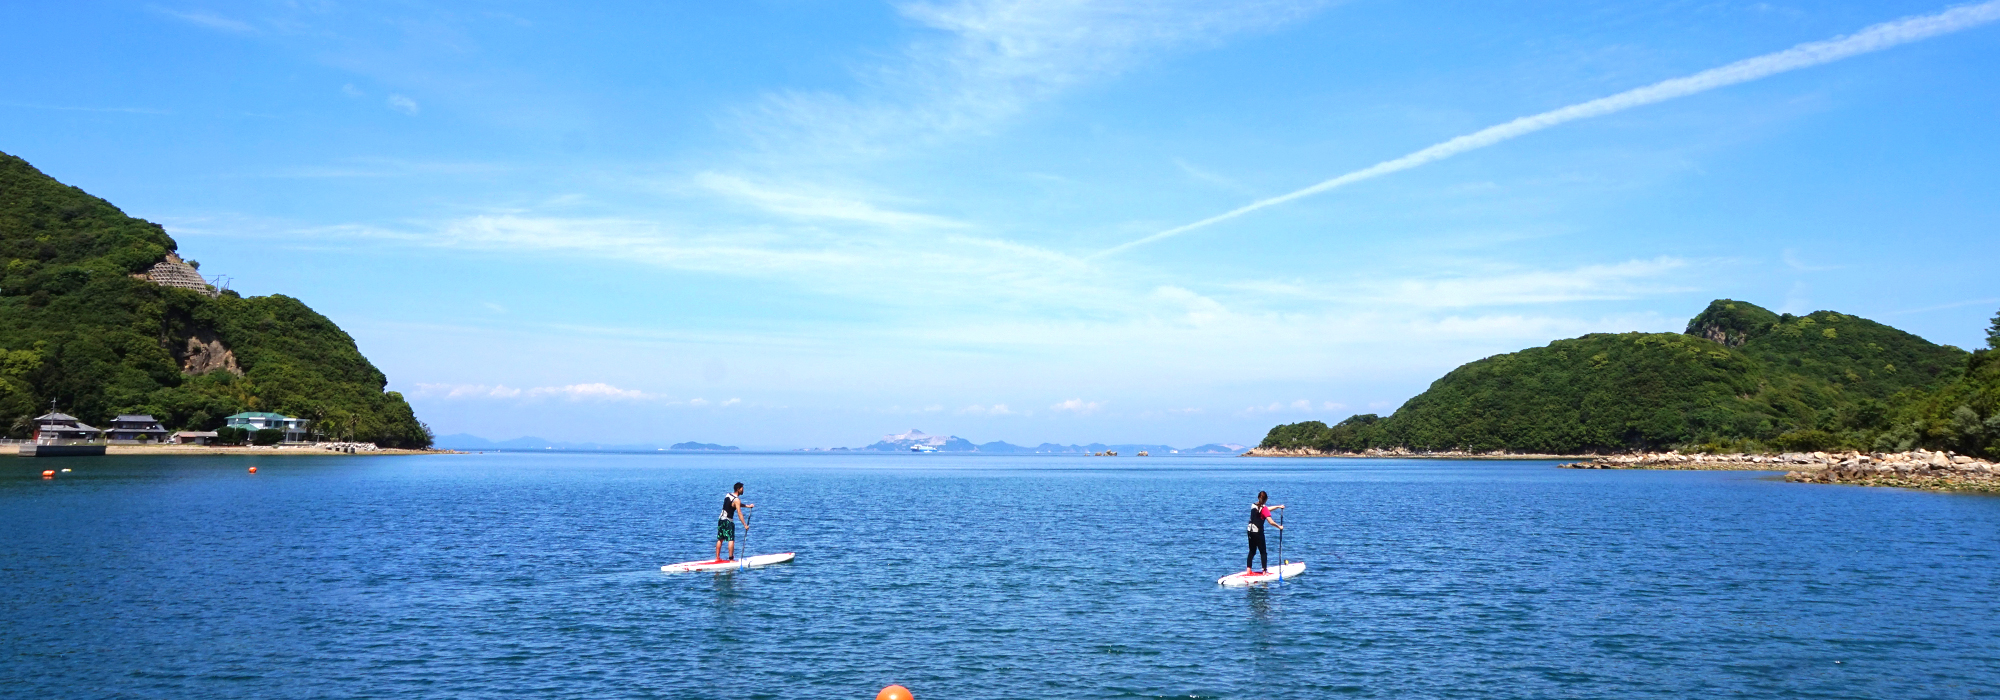 澄んだ空気と共に青瀬戸内海の離島・香川県の小豆島の海でSUP体験をしよう。